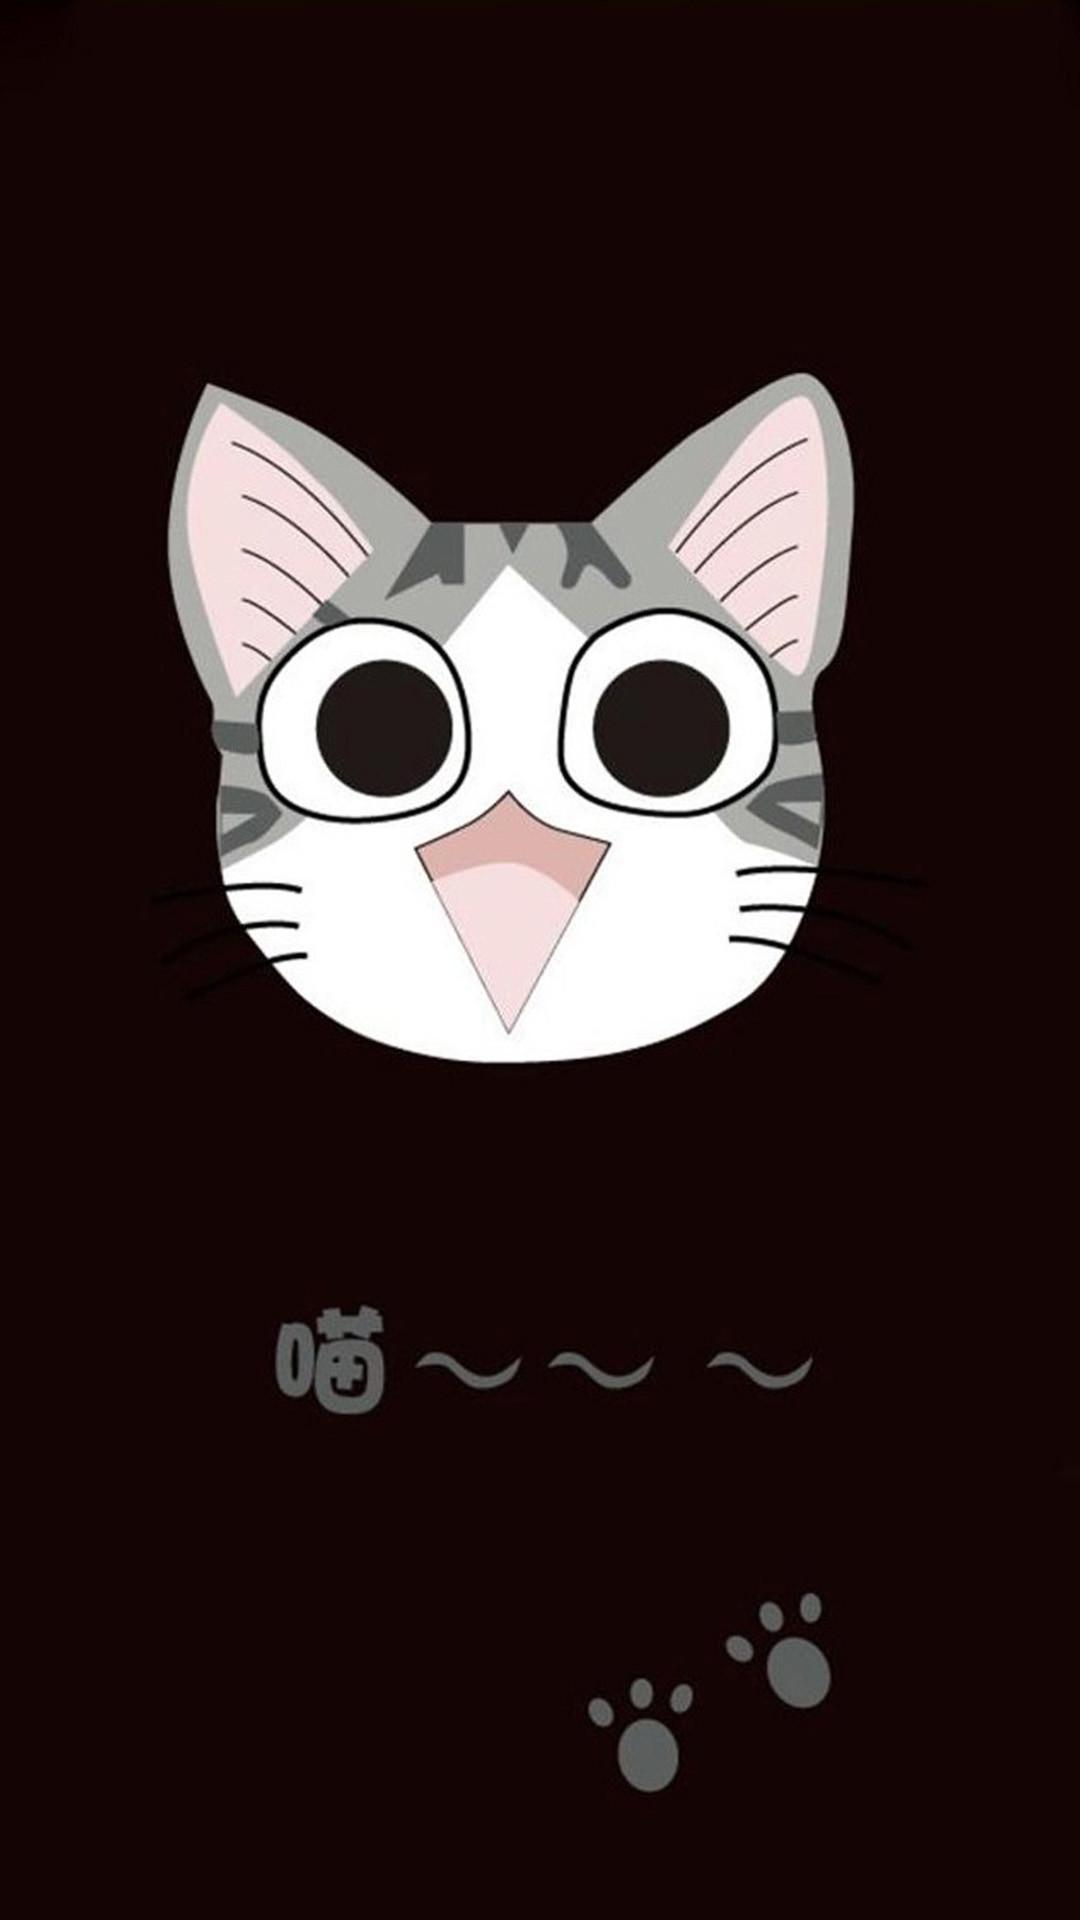 1080x1920 Cute cat cartoon 06 Galaxy S5 Wallpapers.jpg